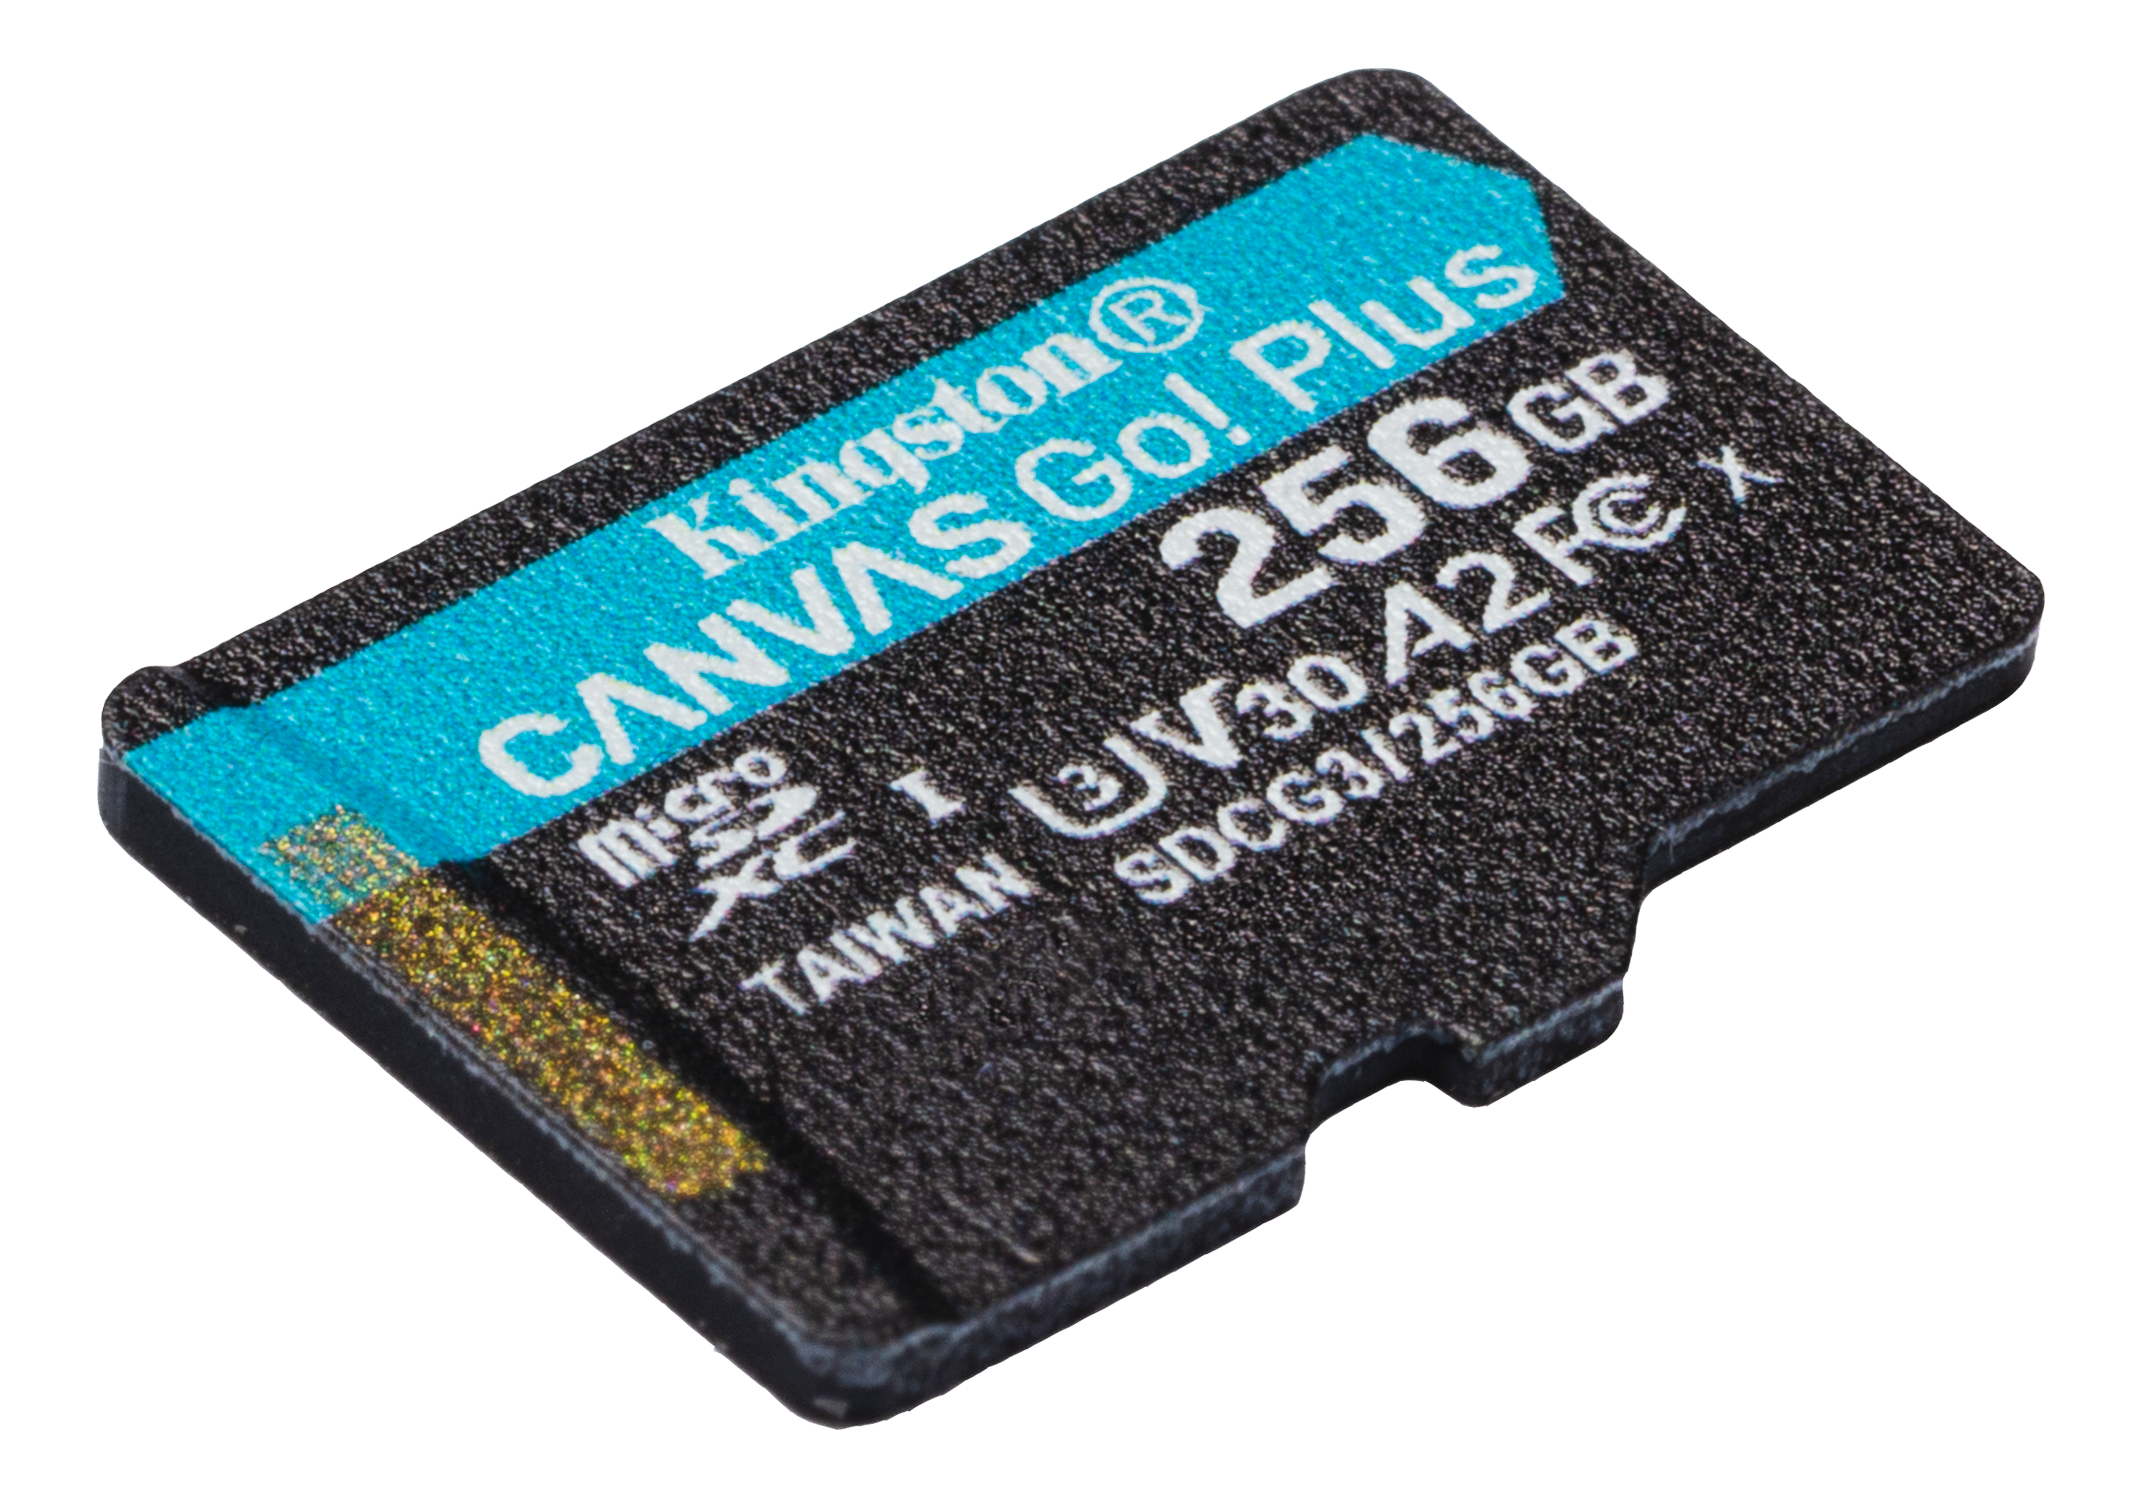 Kingston microSDXC, Canvas Go Plus, 256GB